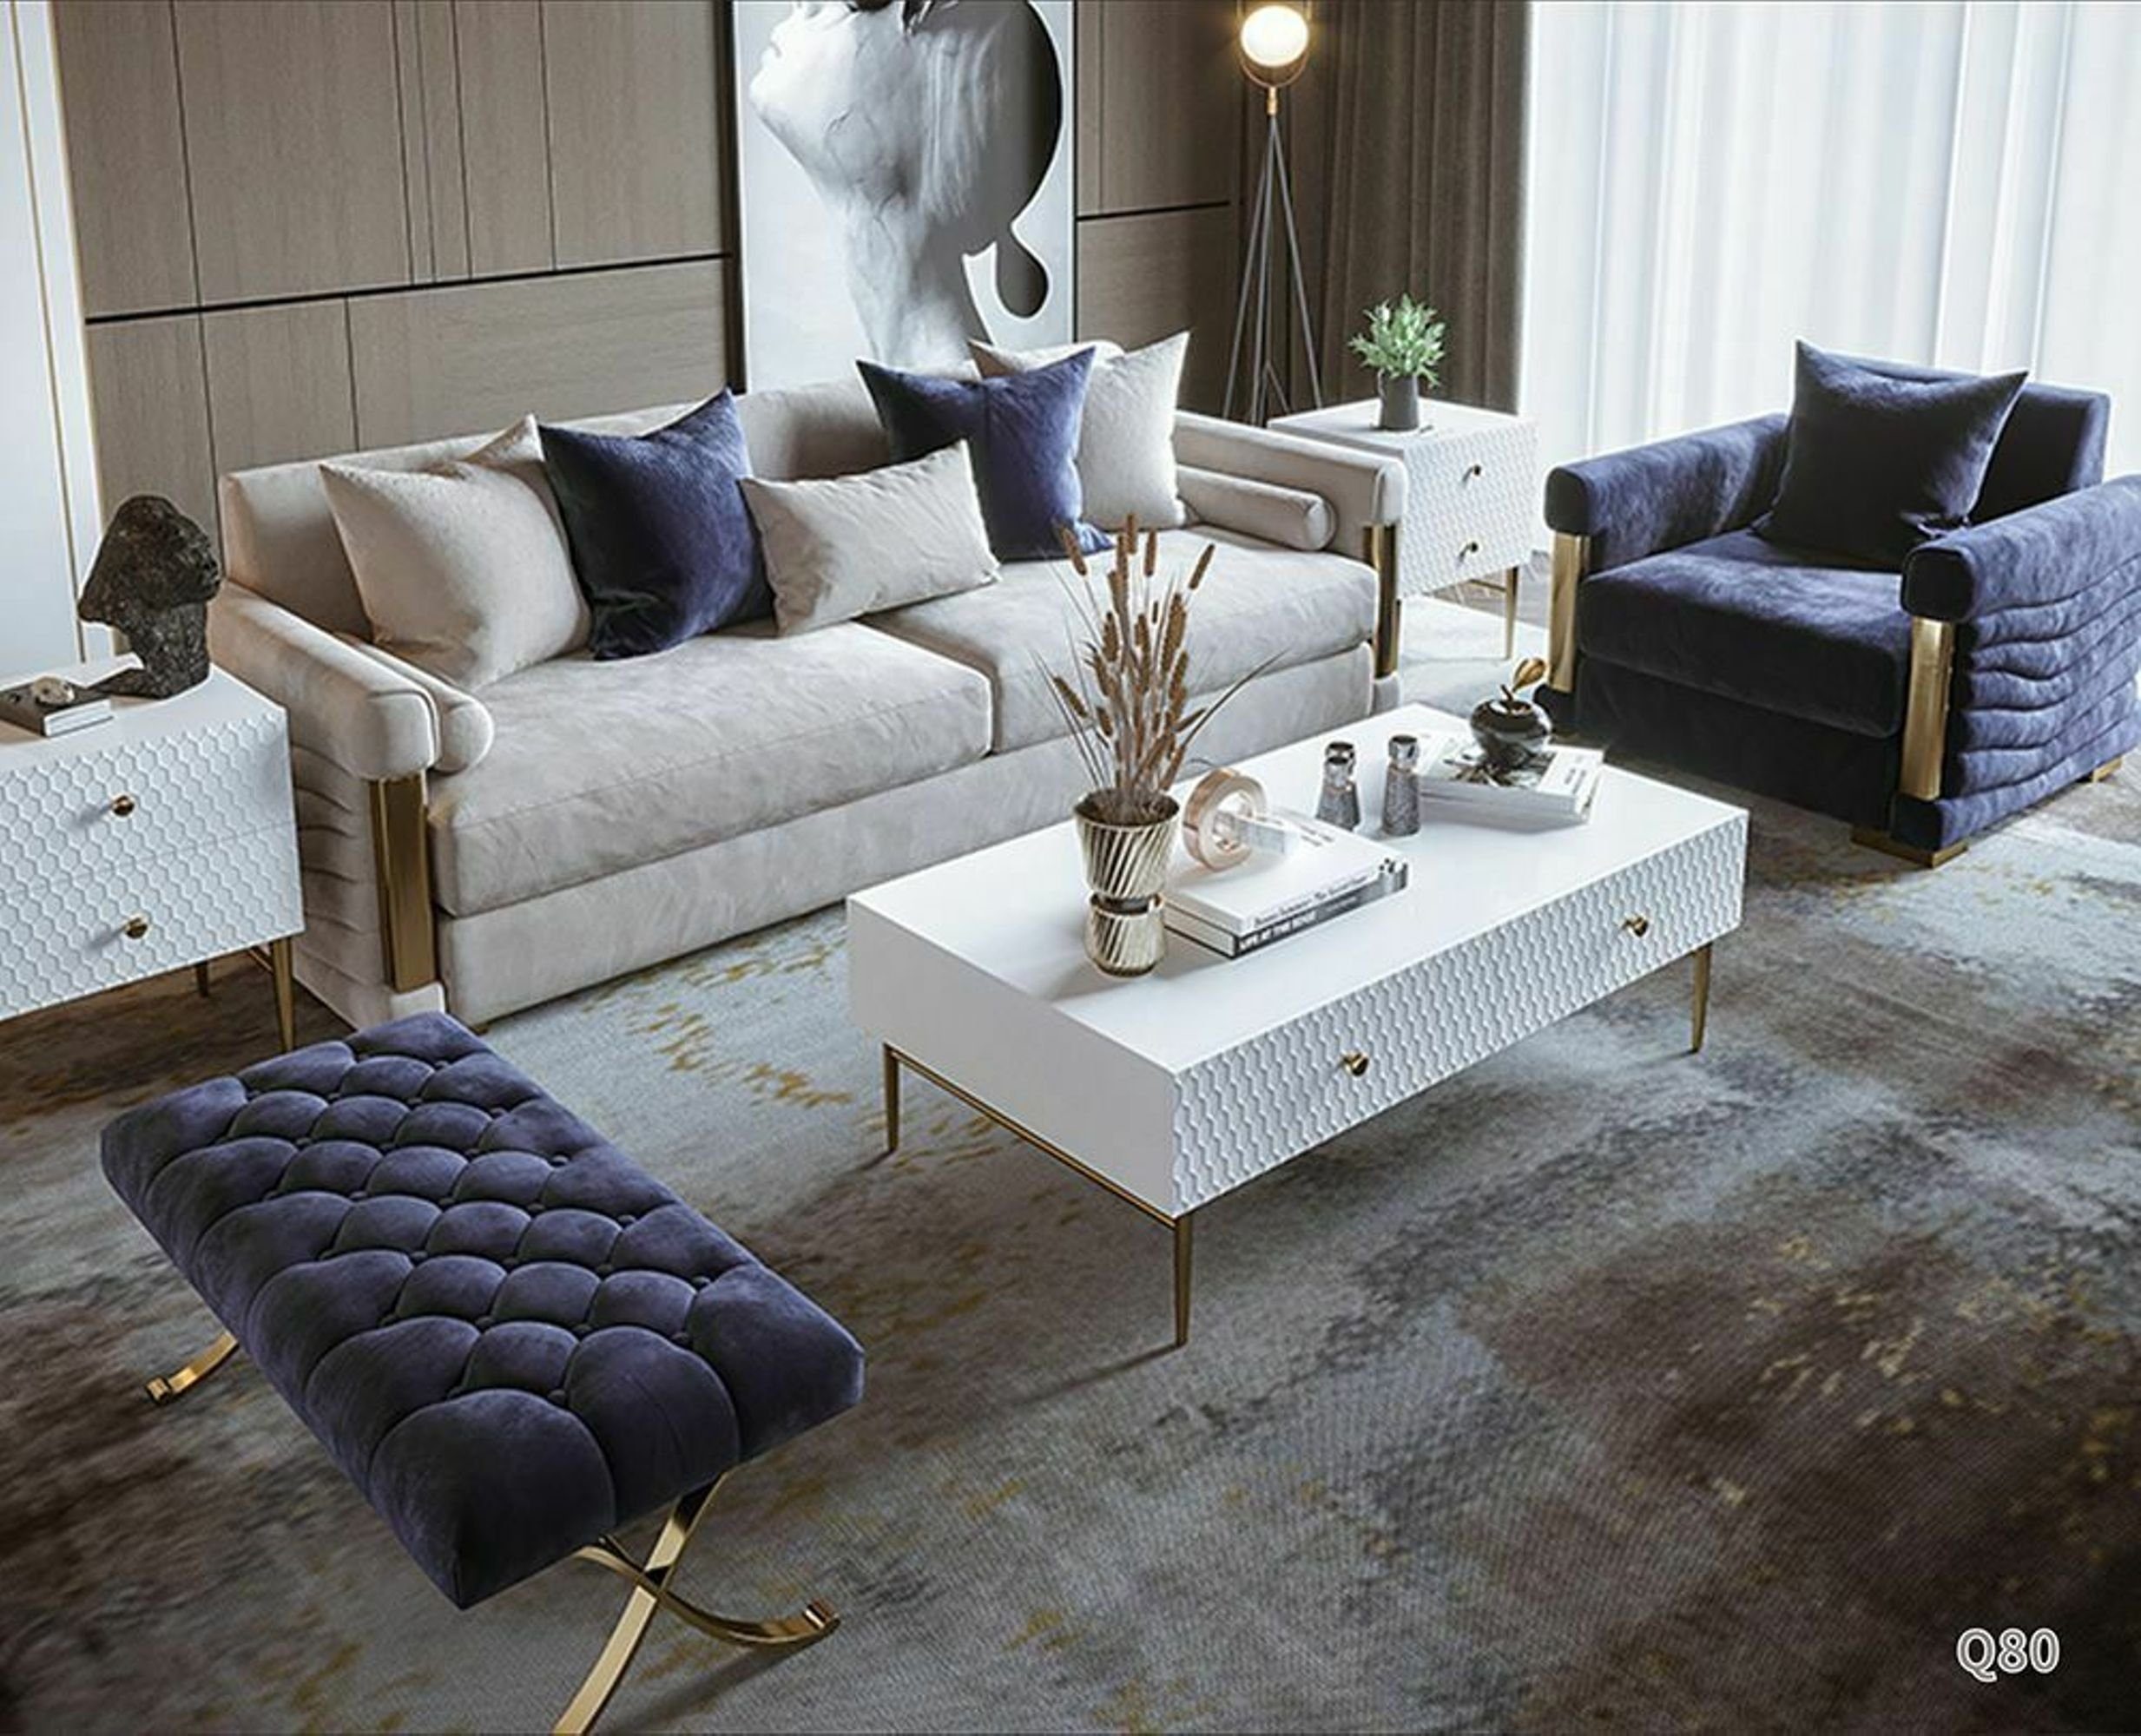 JVmoebel Sofa Designer Couch Polster Sitz Garnitur Garnituren Textil 3+1 Sitzer, Made in Europe